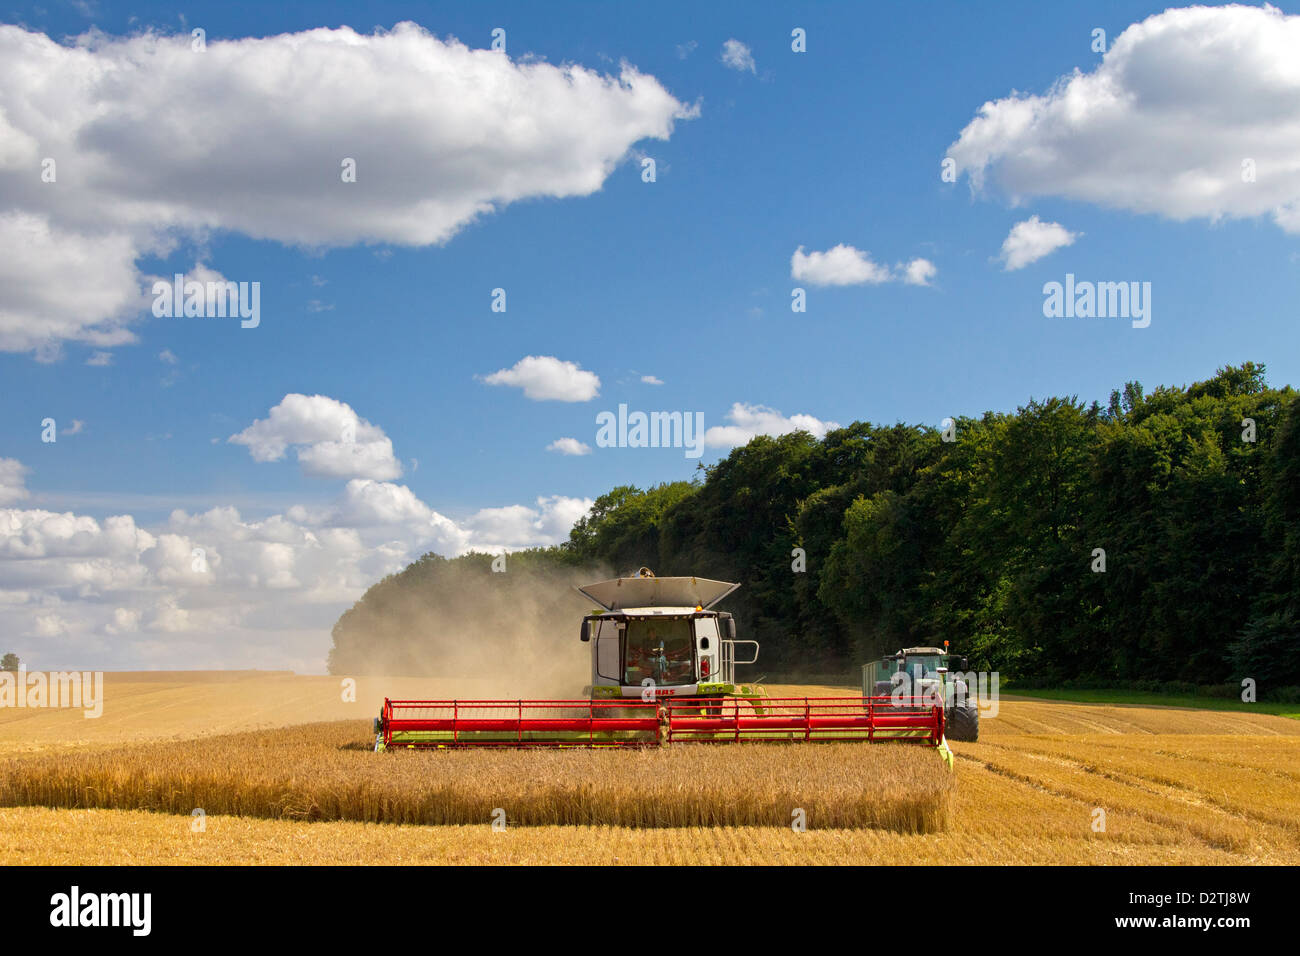 Agriculteur de moissonneuse-batteuse, la récolte de céréales de blé / blé domaine des terres agricoles de l'été Banque D'Images